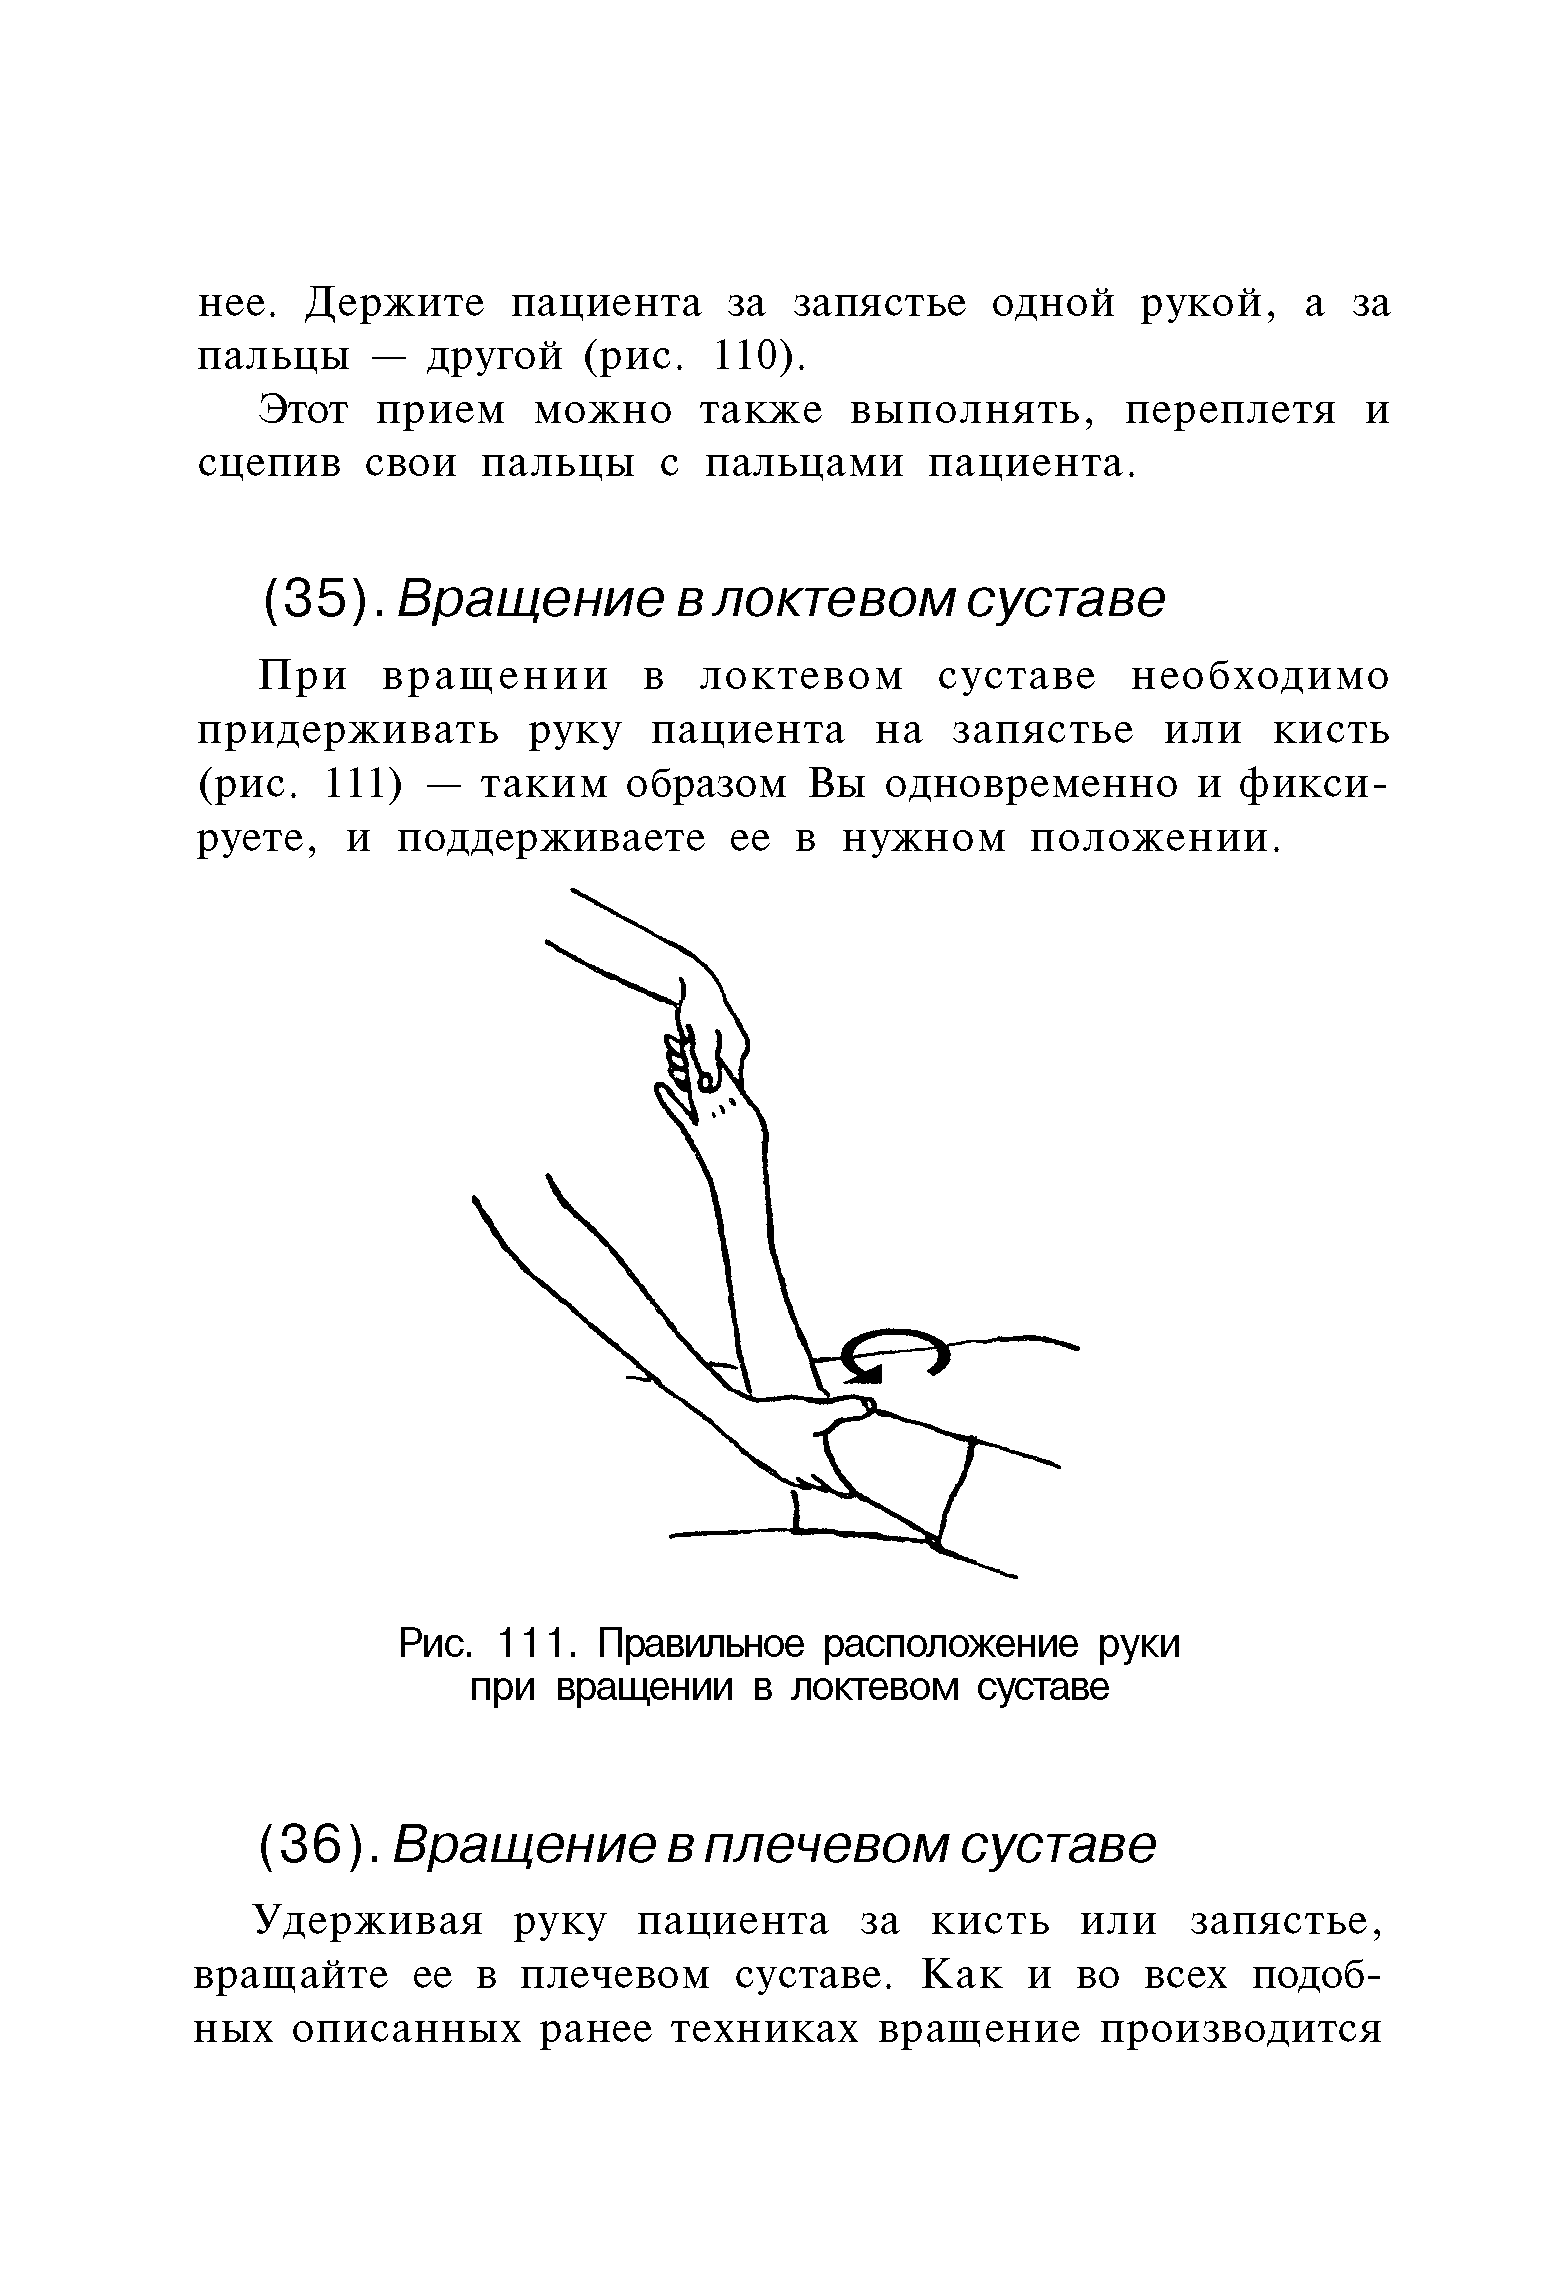 Рис. 111. Правильное расположение руки при вращении в локтевом суставе...